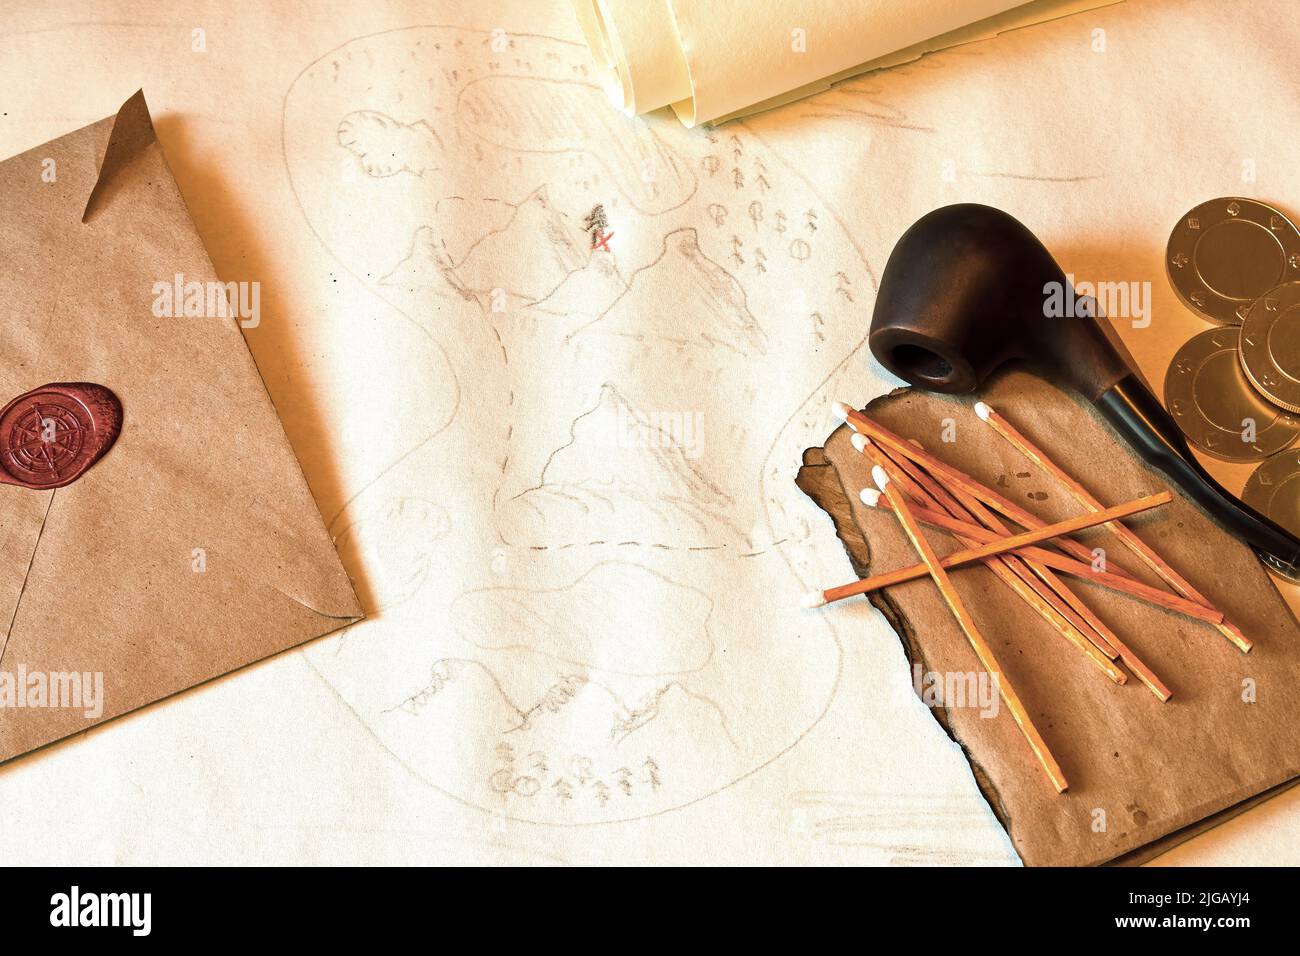 Concept de chasse au Trésor vintage avec carte, pièces d'or, pipe à fumer et allumettes. Équipement de pirates rétro Banque D'Images